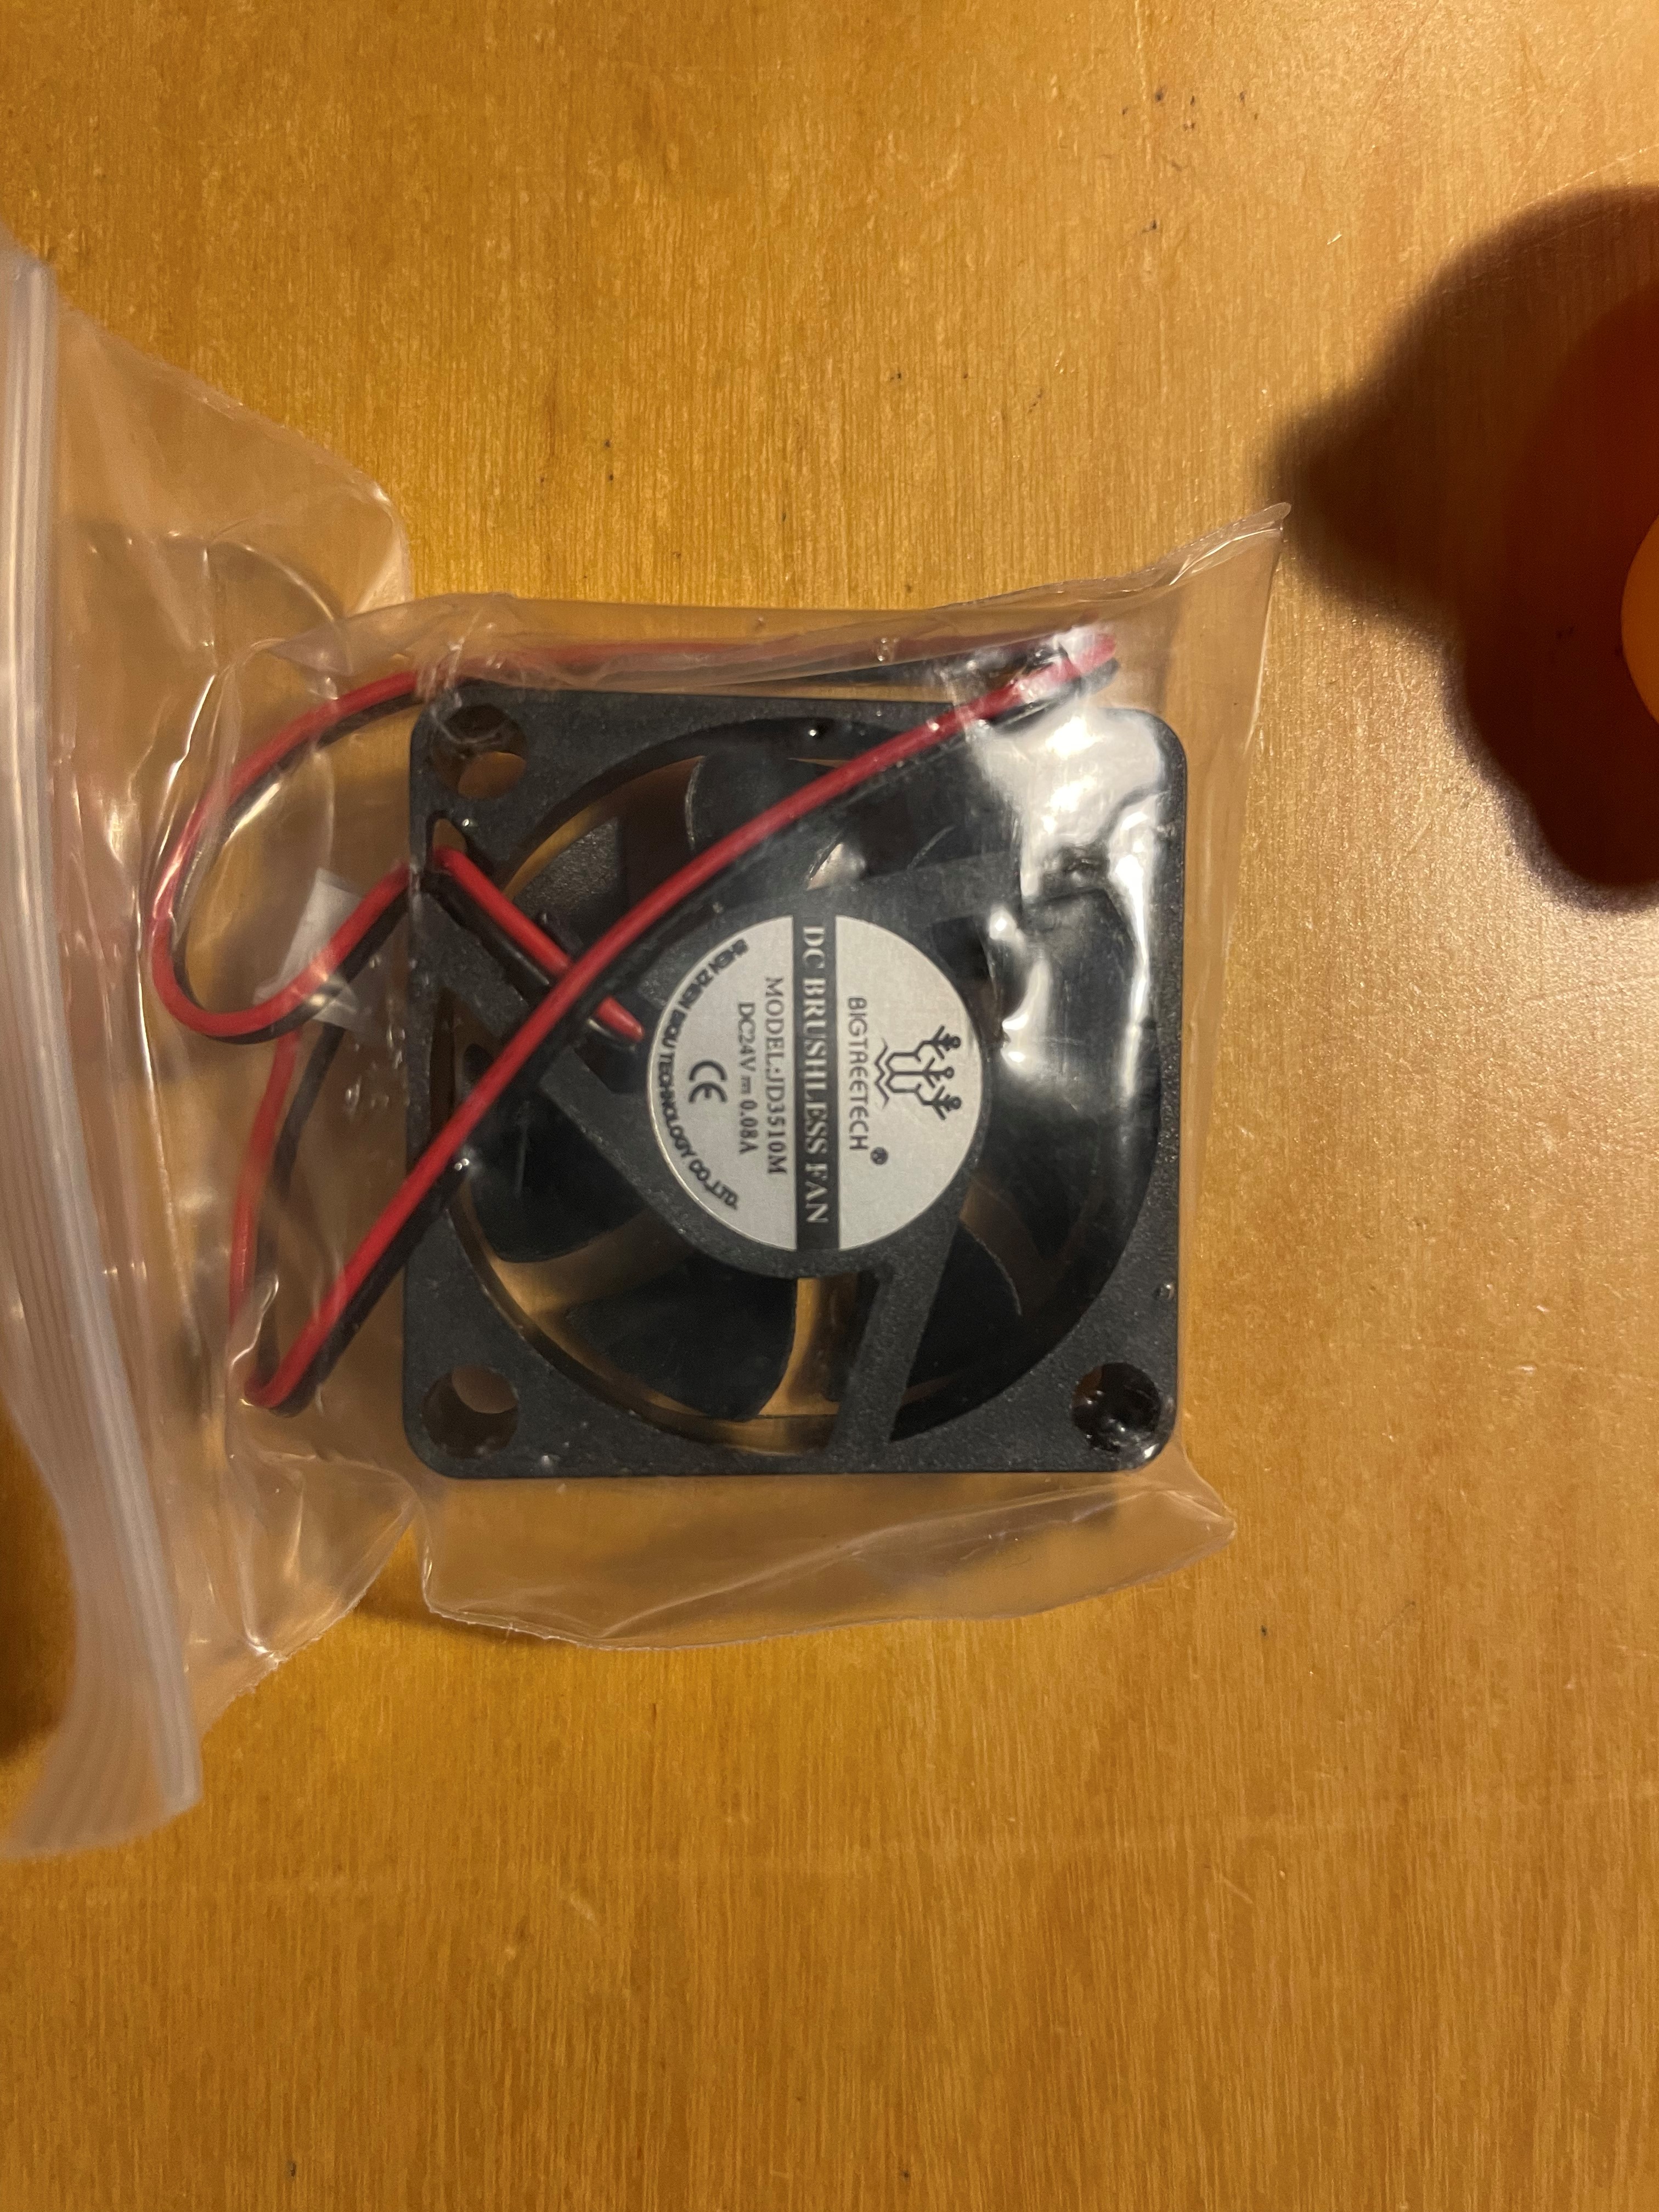 H2 packaging - fan